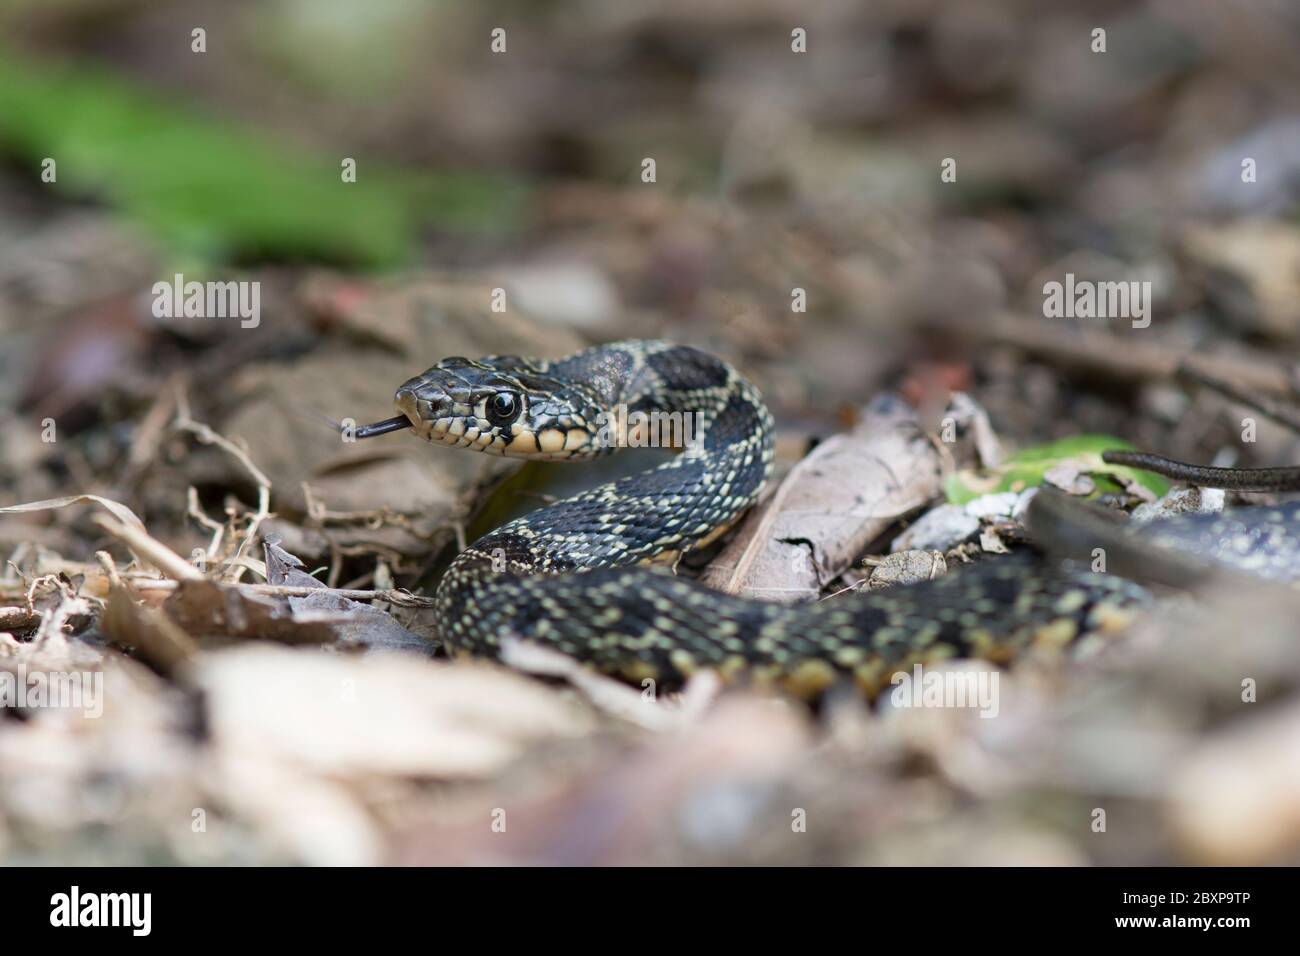 Una serpiente de látigo de herradura (Hemorrhois hippocepis) que se encuentra en un jardín, Andalucía, España. Foto de stock